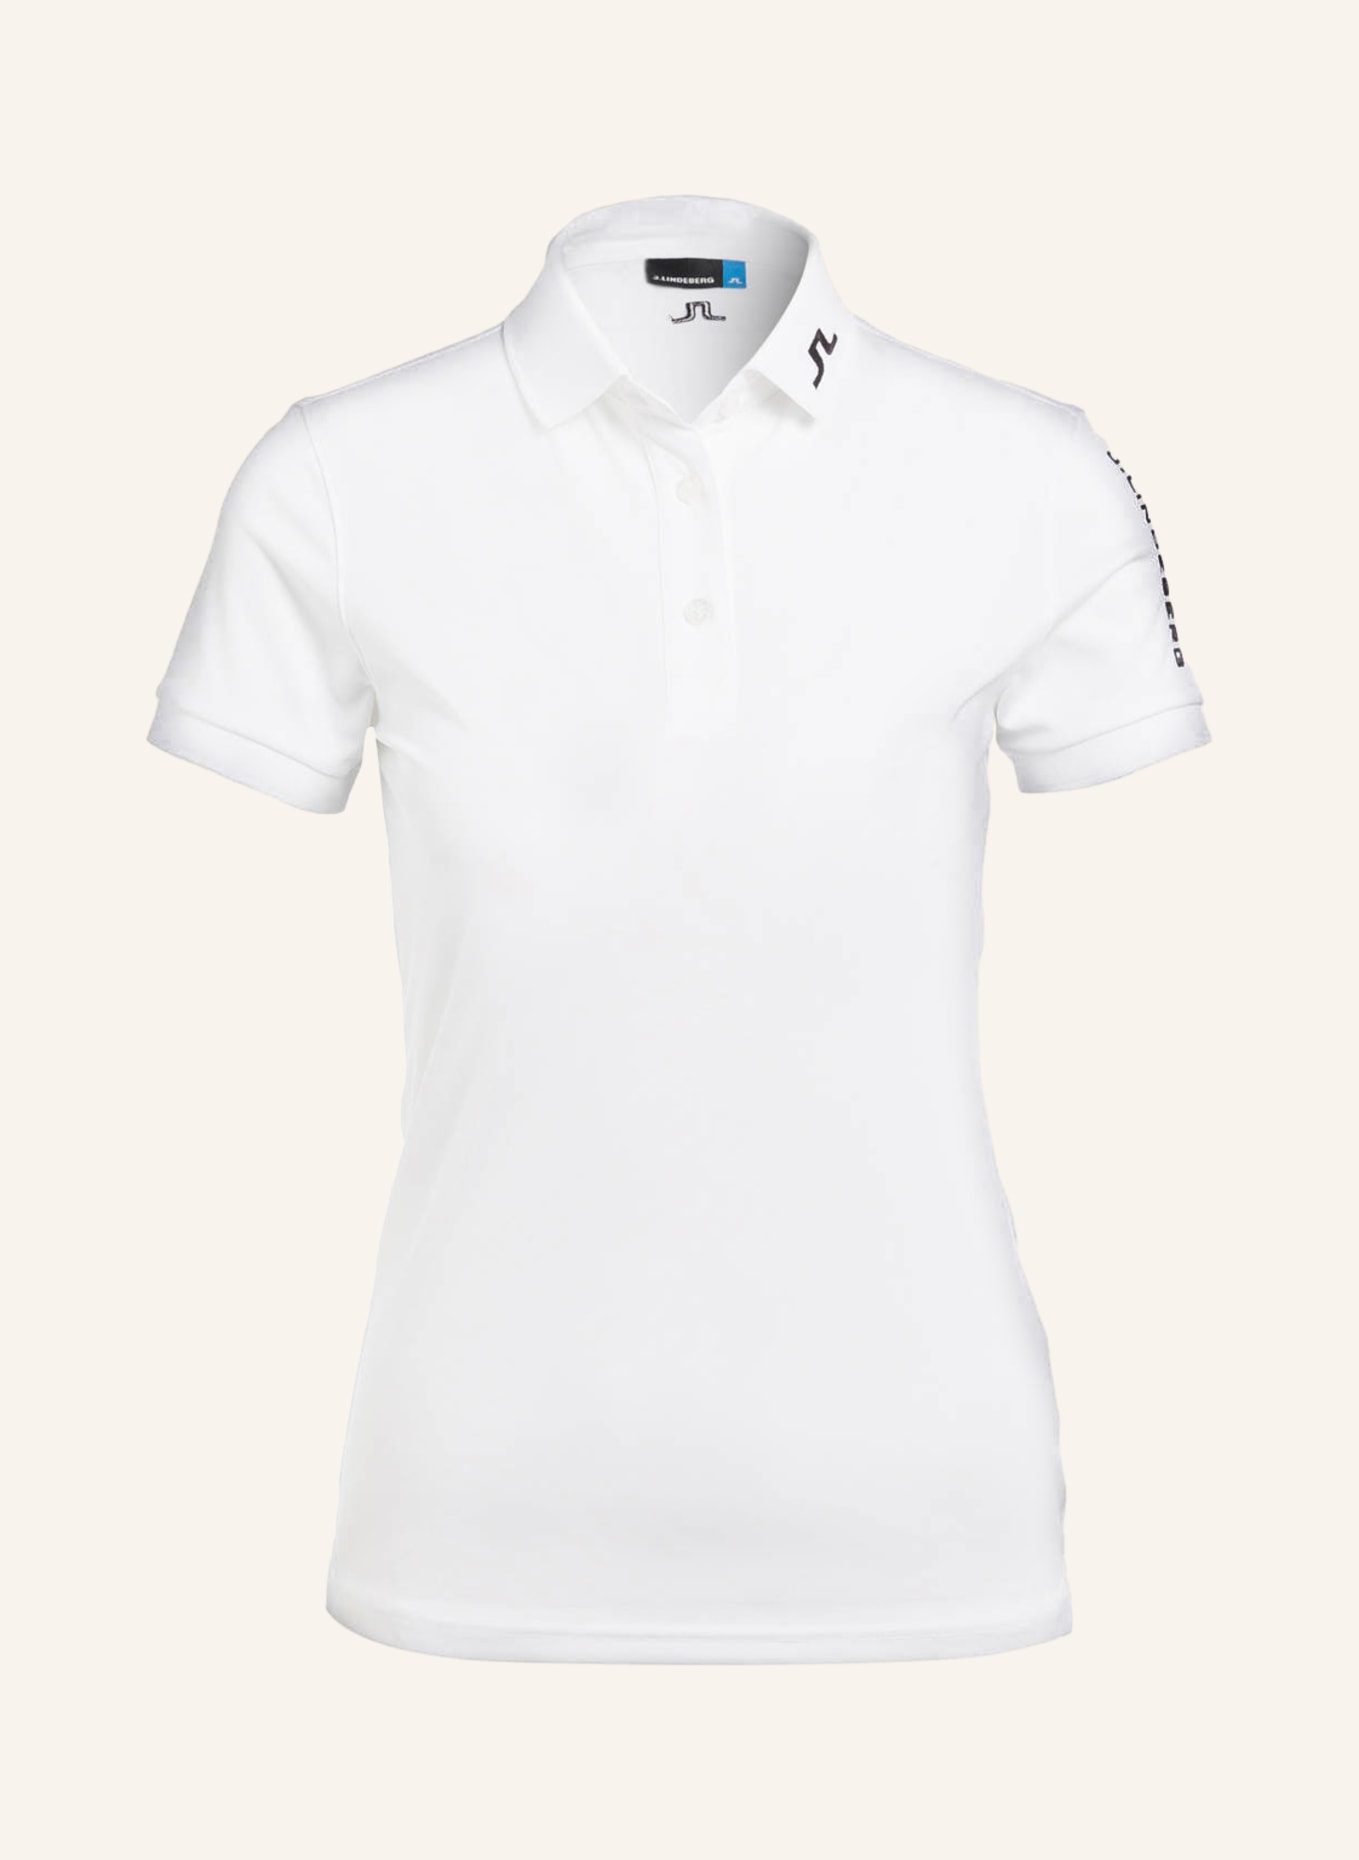 J.LINDEBERG Performance polo shirt , Color: WHITE (Image 1)